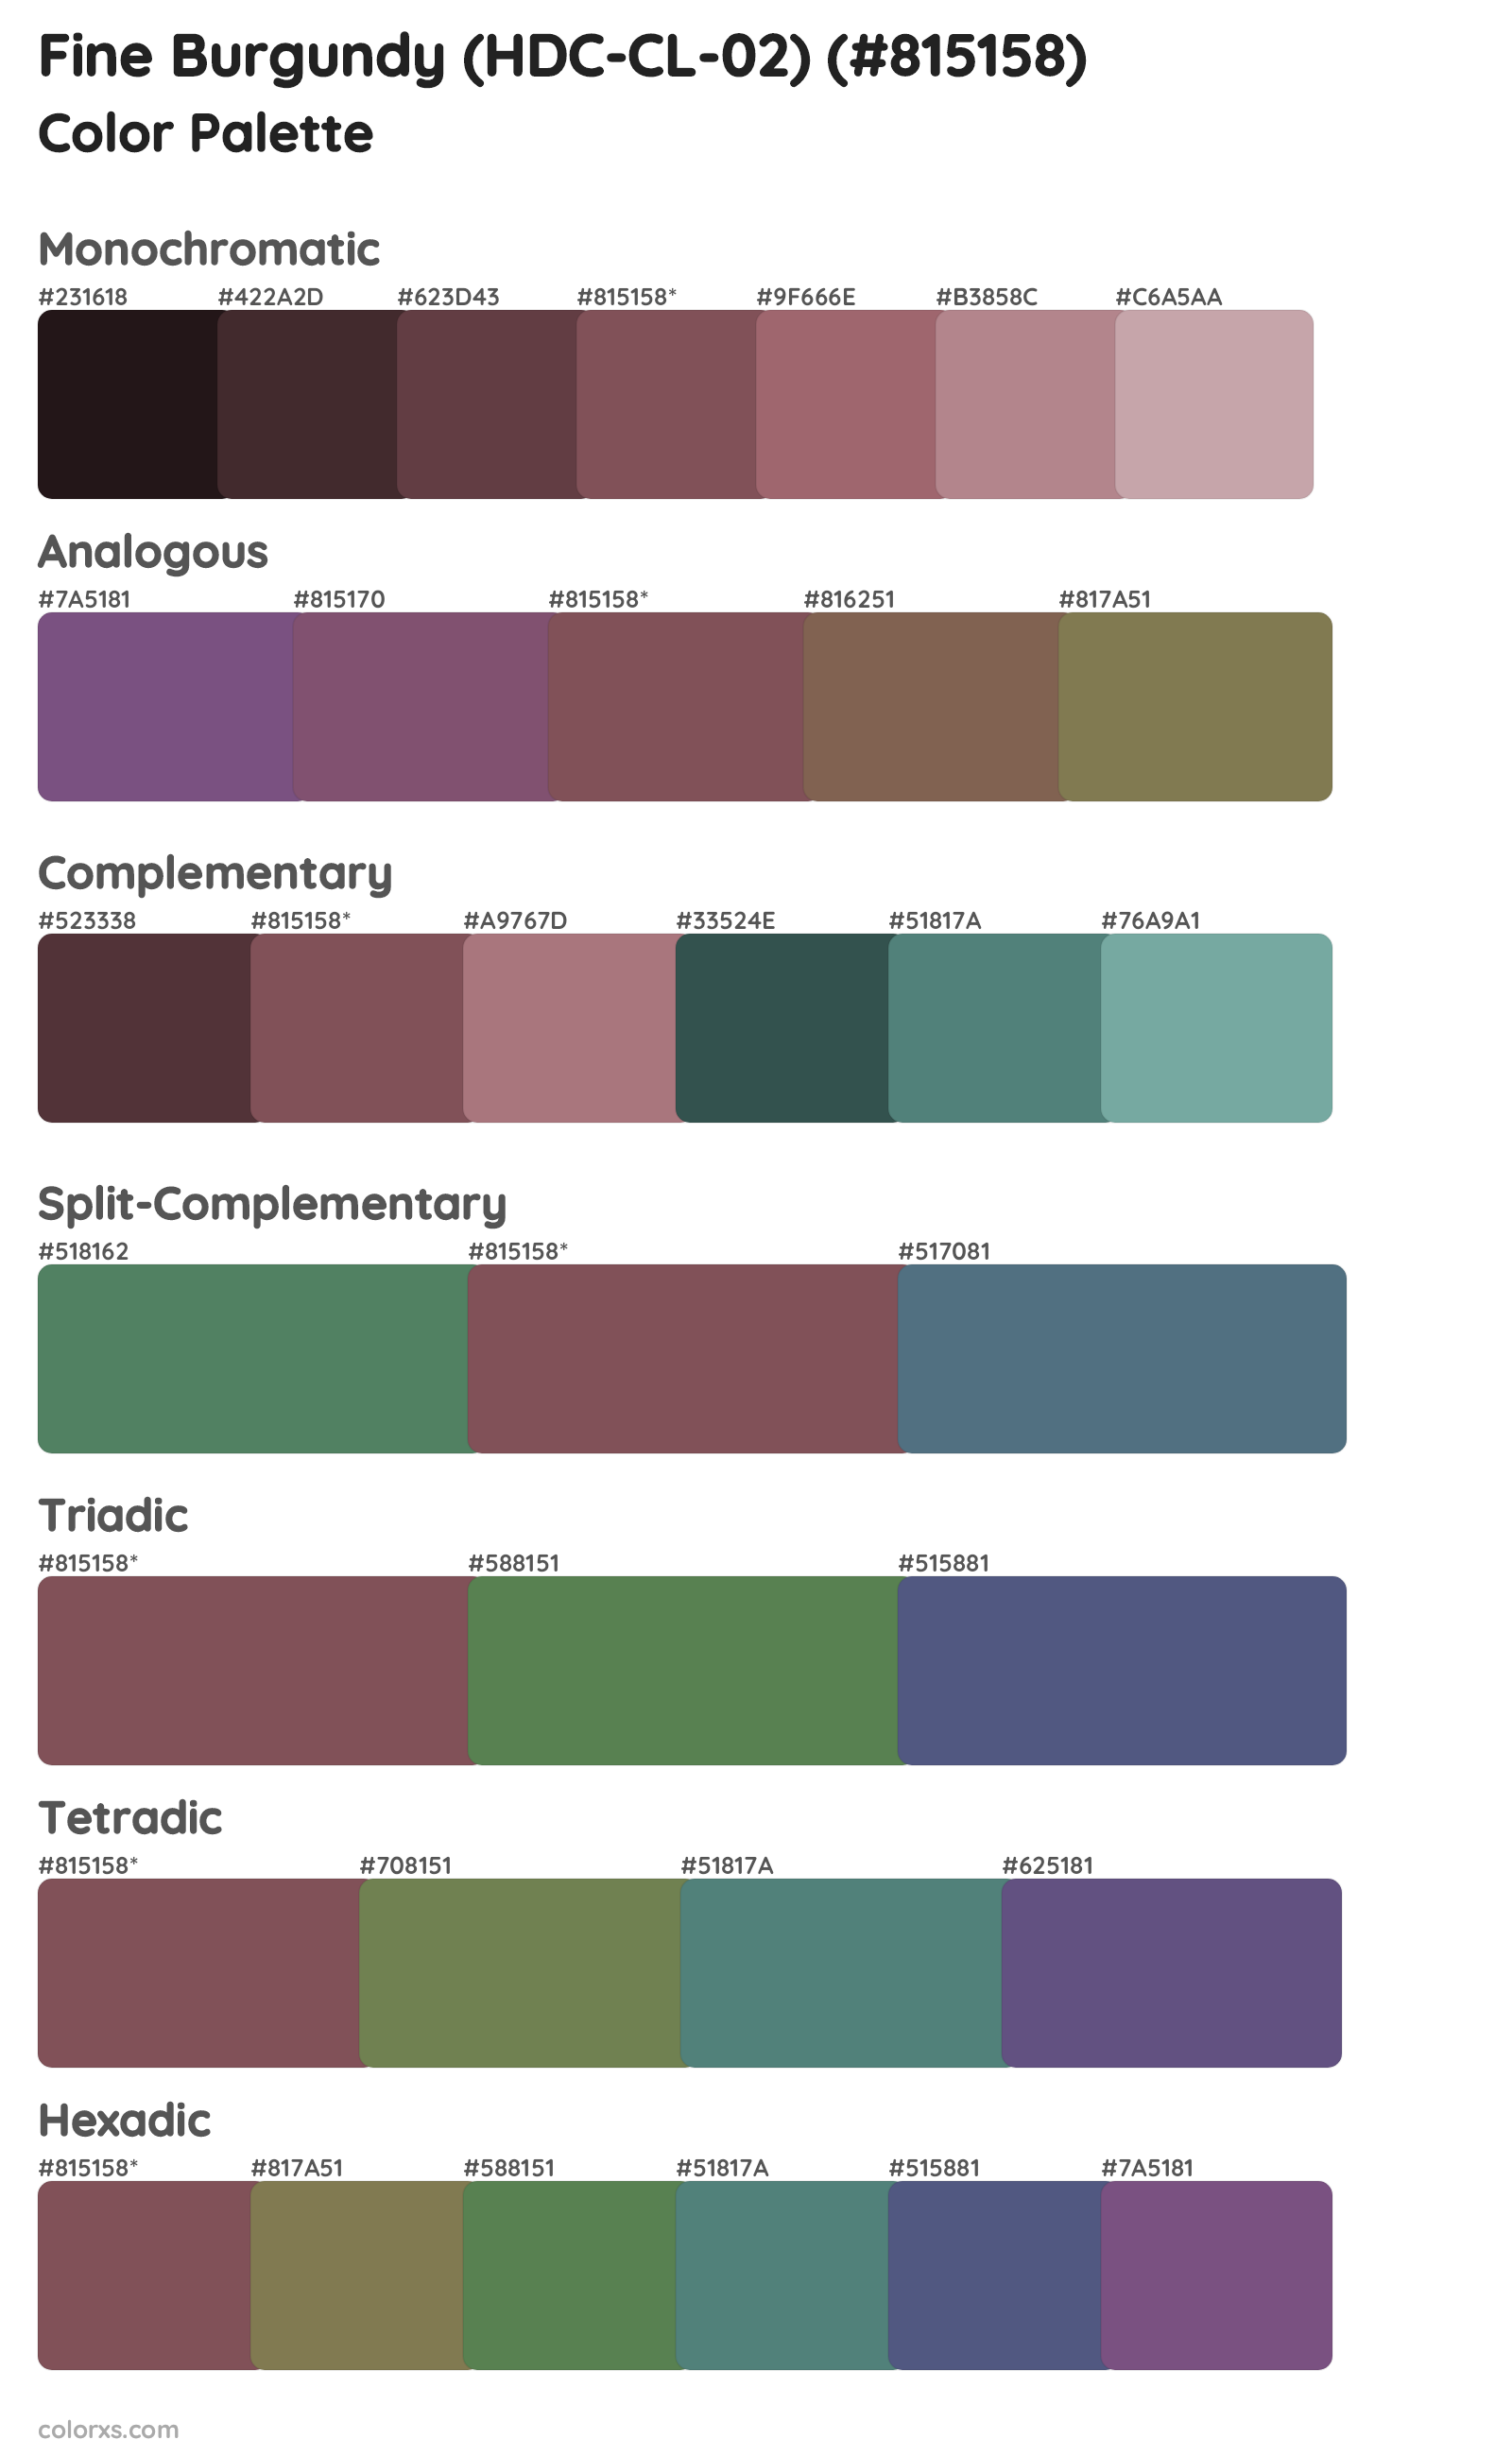 Fine Burgundy (HDC-CL-02) Color Scheme Palettes